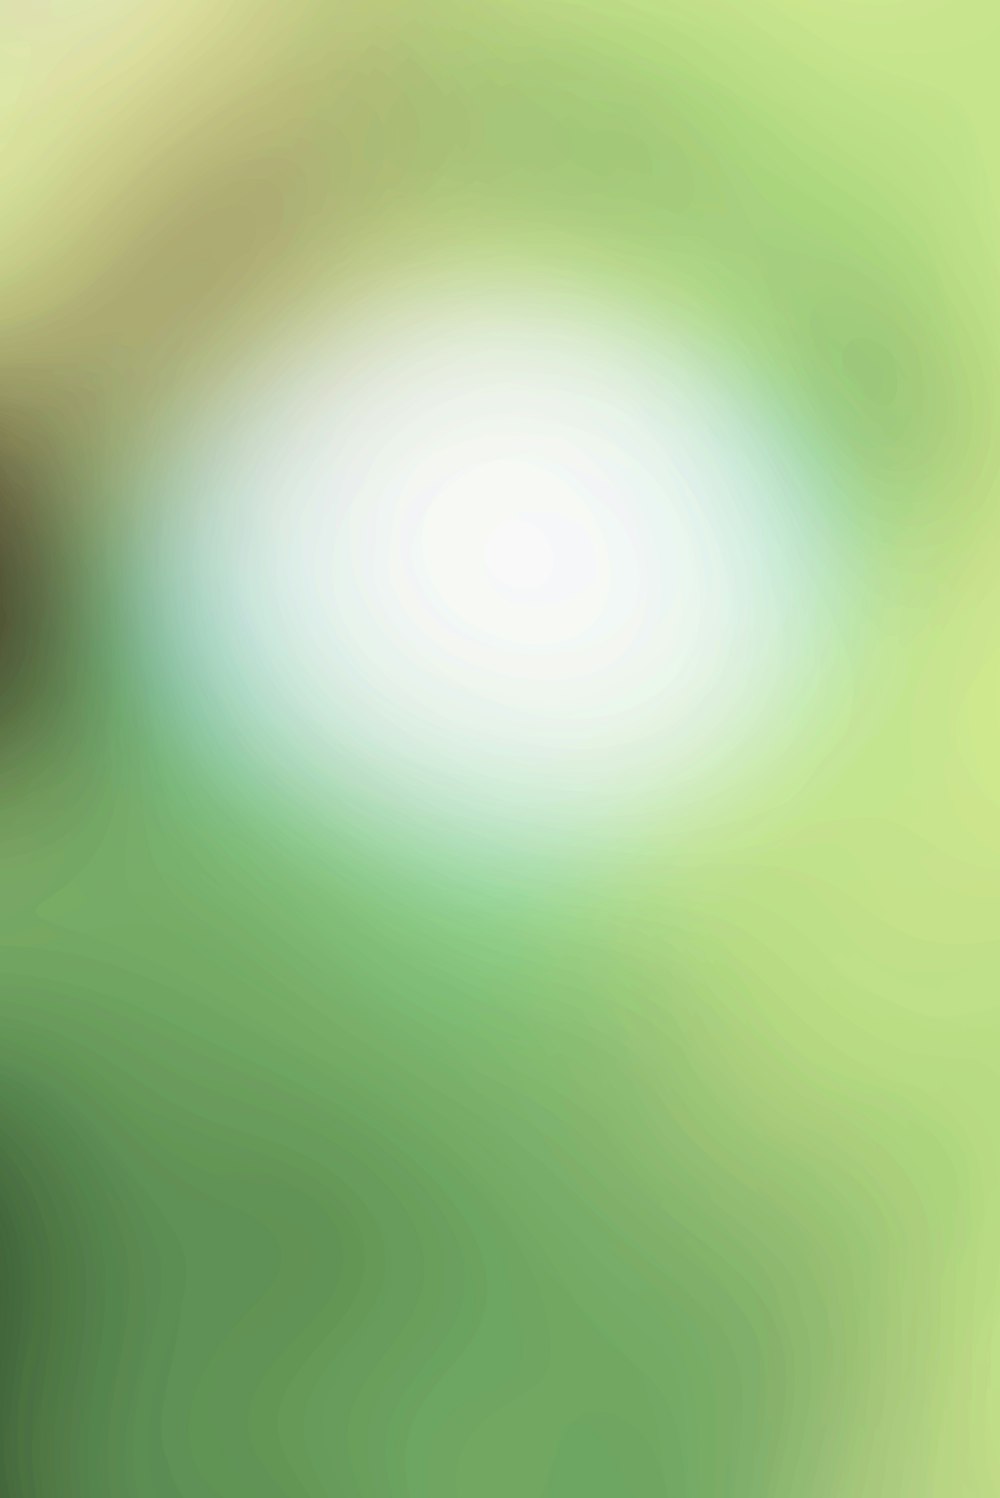 una imagen borrosa de un fondo verde y amarillo